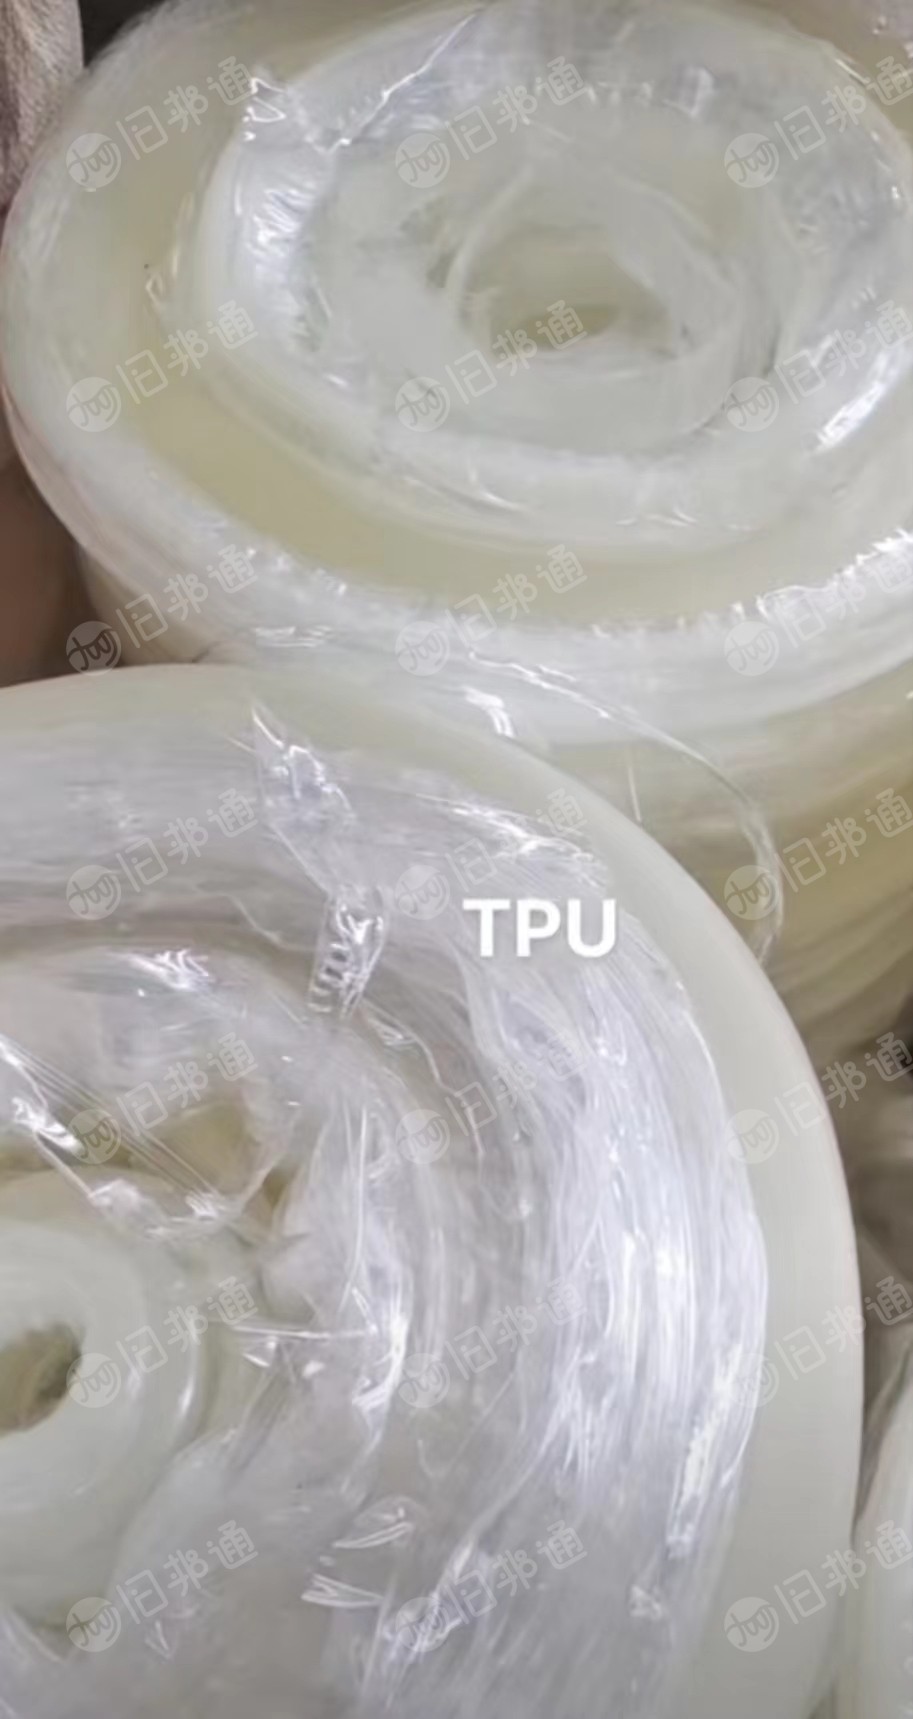 专业回收TPU车衣膜，打包、边料、卷筒都可以